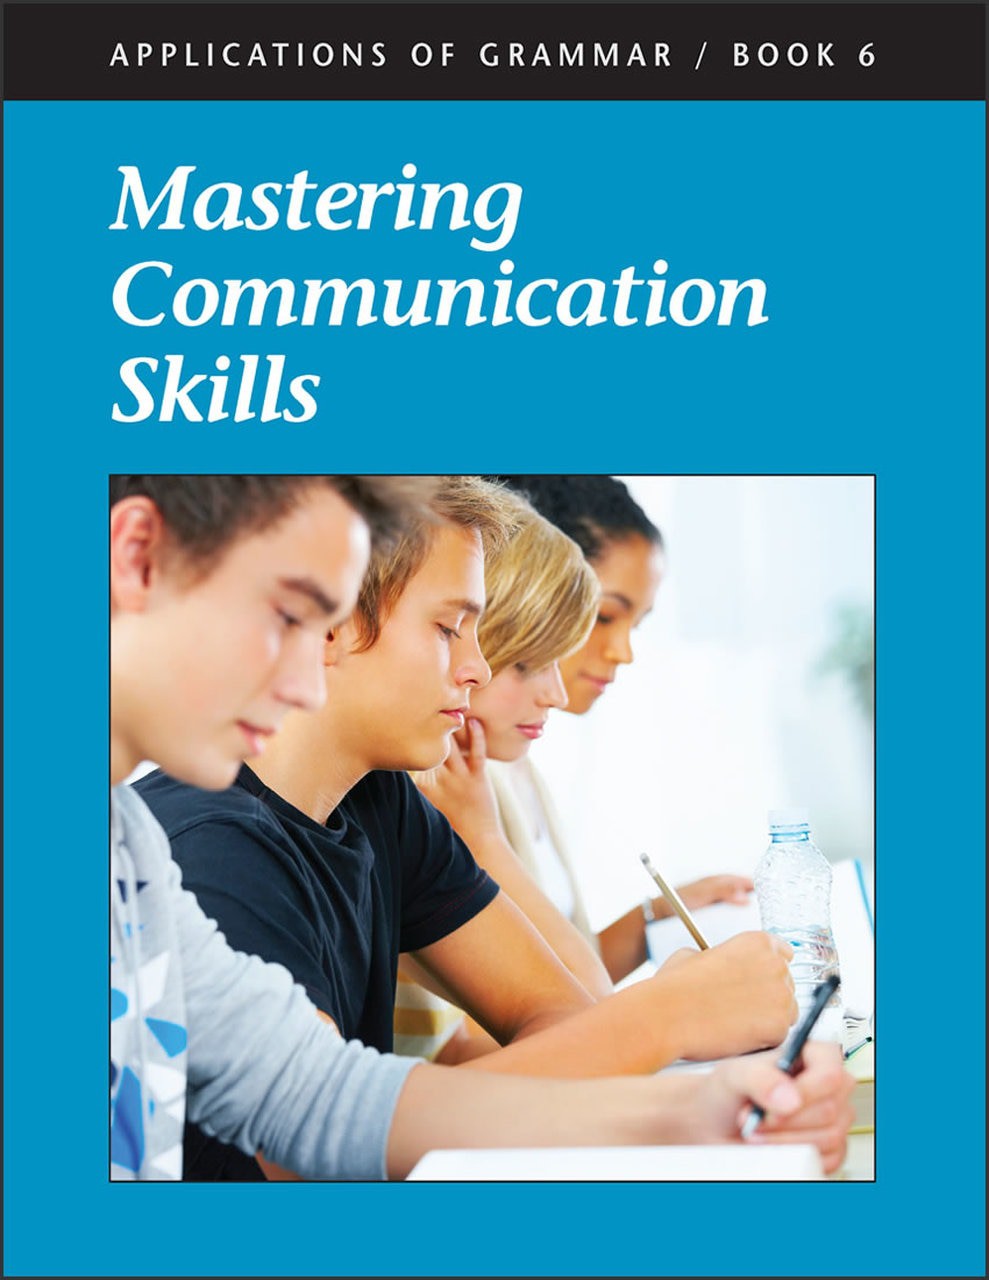 Applications of Grammar Book 6: Mastering Communication Skills